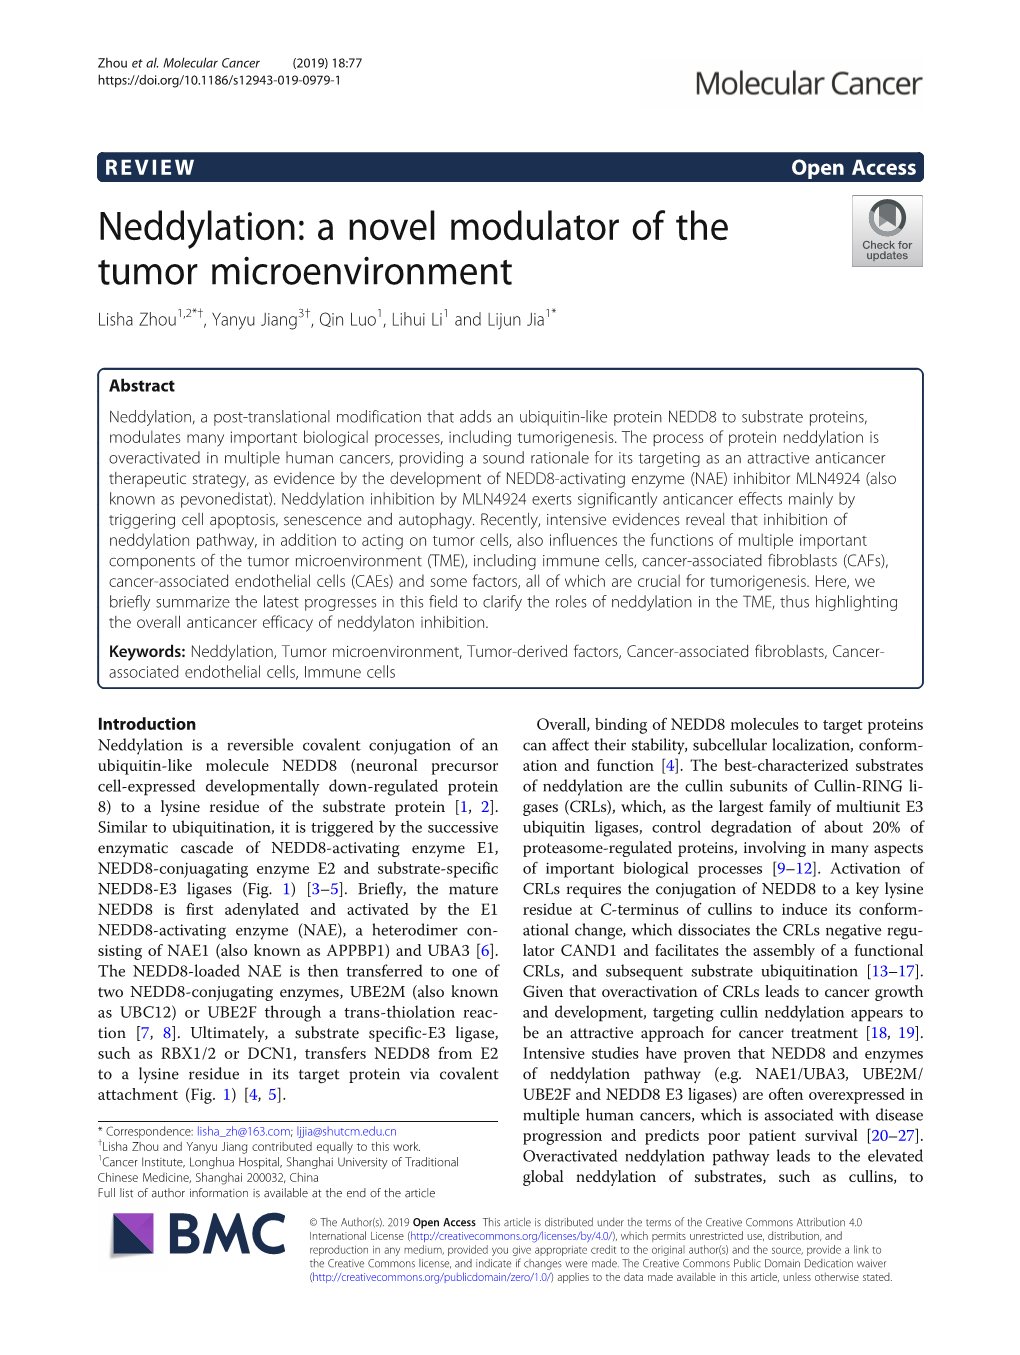 Neddylation: a Novel Modulator of the Tumor Microenvironment Lisha Zhou1,2*†, Yanyu Jiang3†, Qin Luo1, Lihui Li1 and Lijun Jia1*